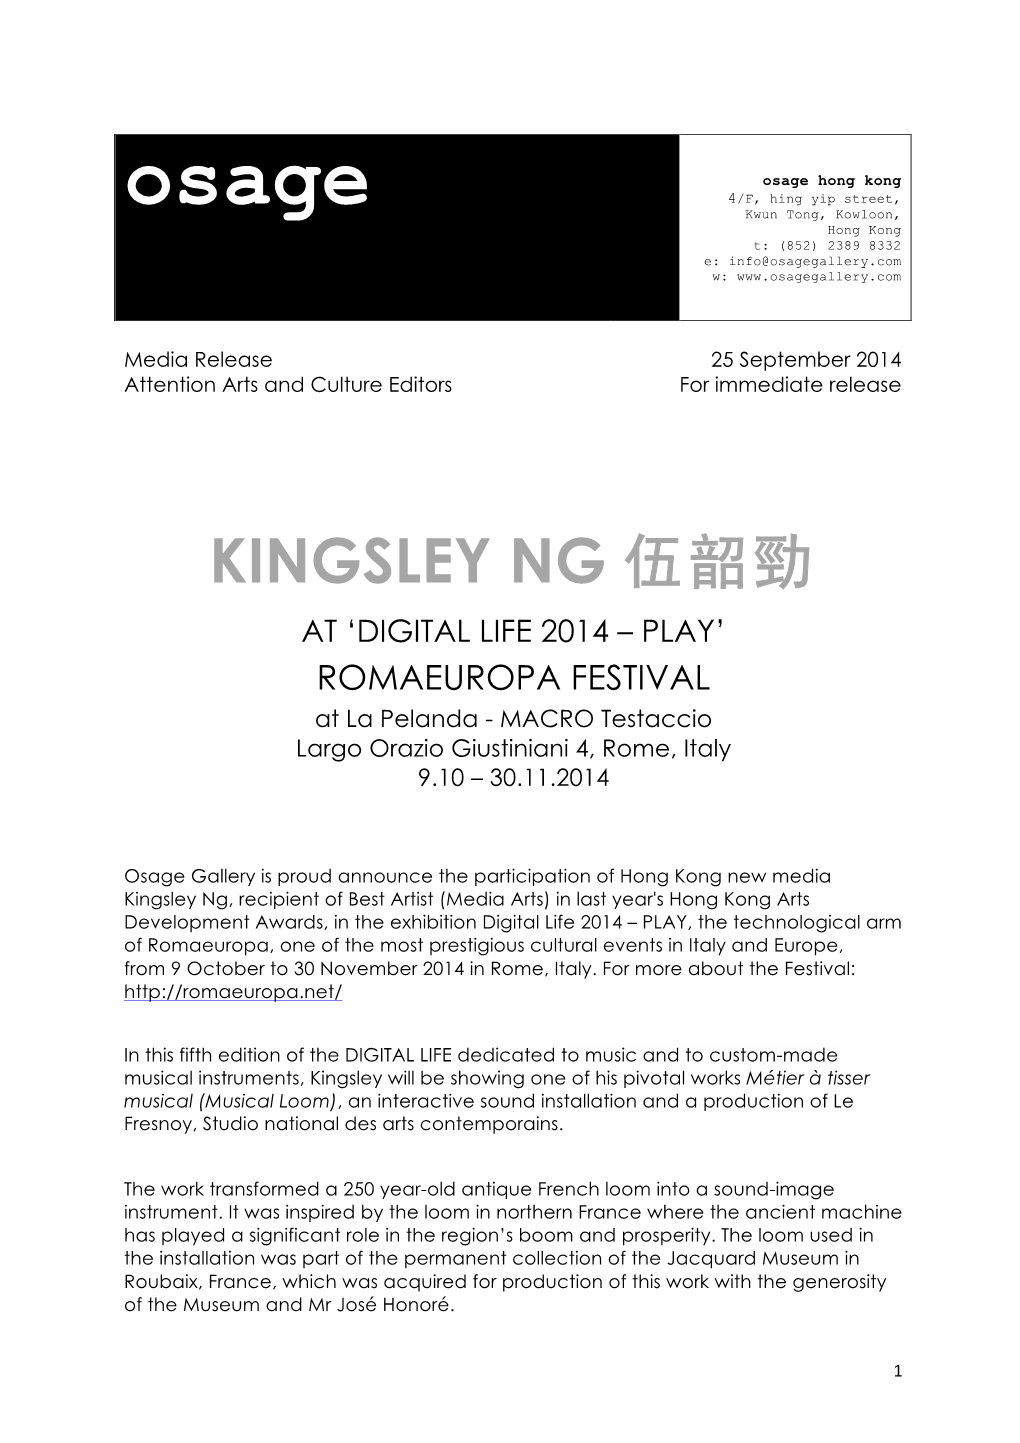 Kingsley Ng 伍韶勁 at ‘Digital Life 2014 – Play’